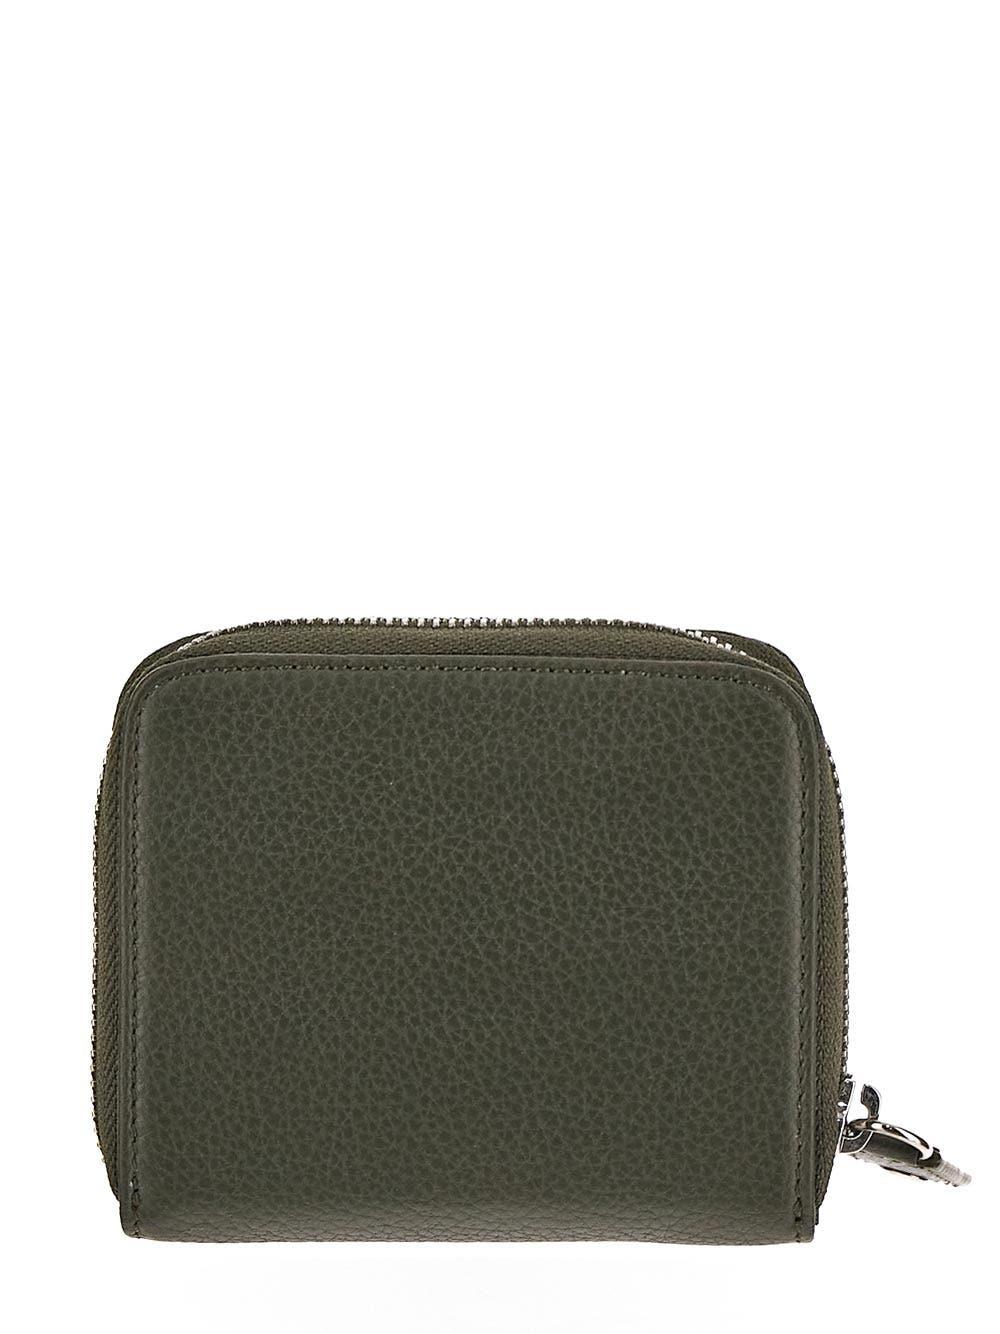 Vivienne Westwood Grain Leather Medium Zip Wallet in Green | Lyst